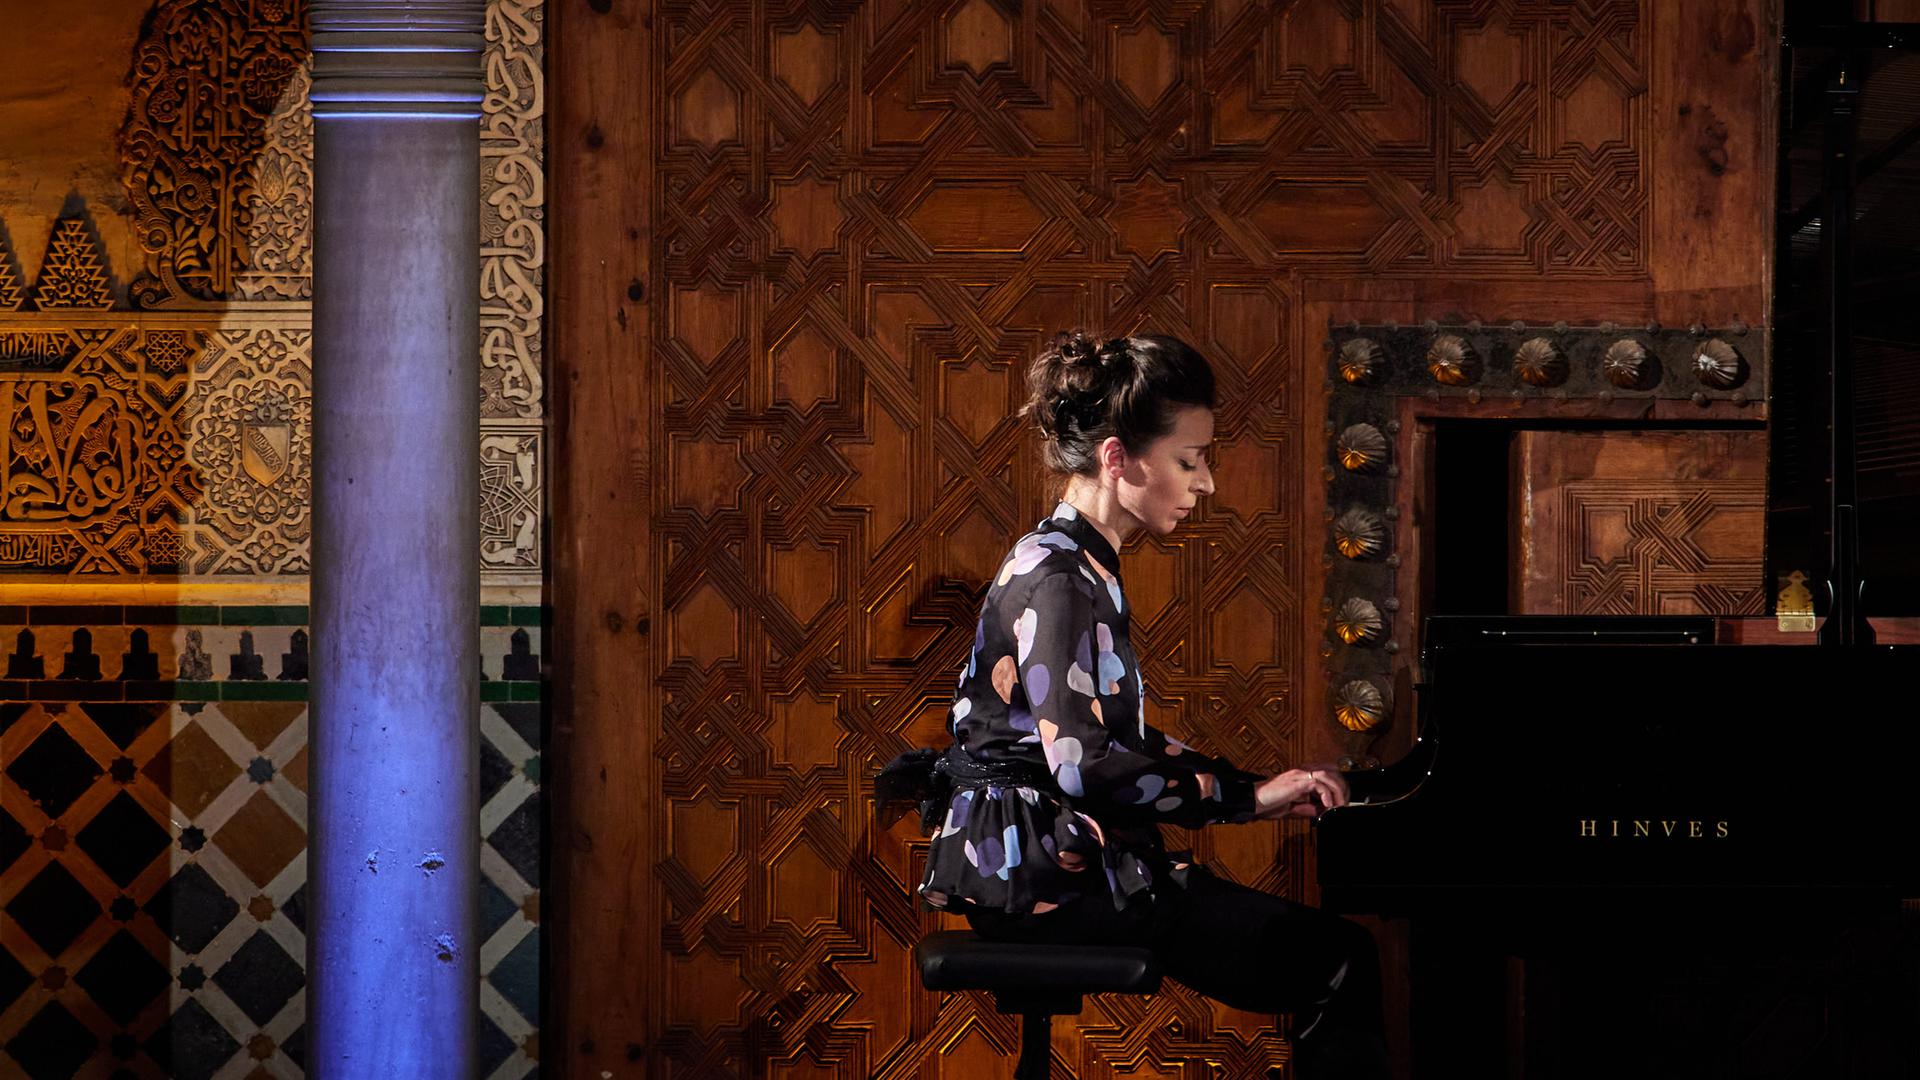 Auf dem Bild ist eine Frau im Profil zu sehen, die Klavier spielt. Es ist die Pianistin Yulianna Avdeeva. 